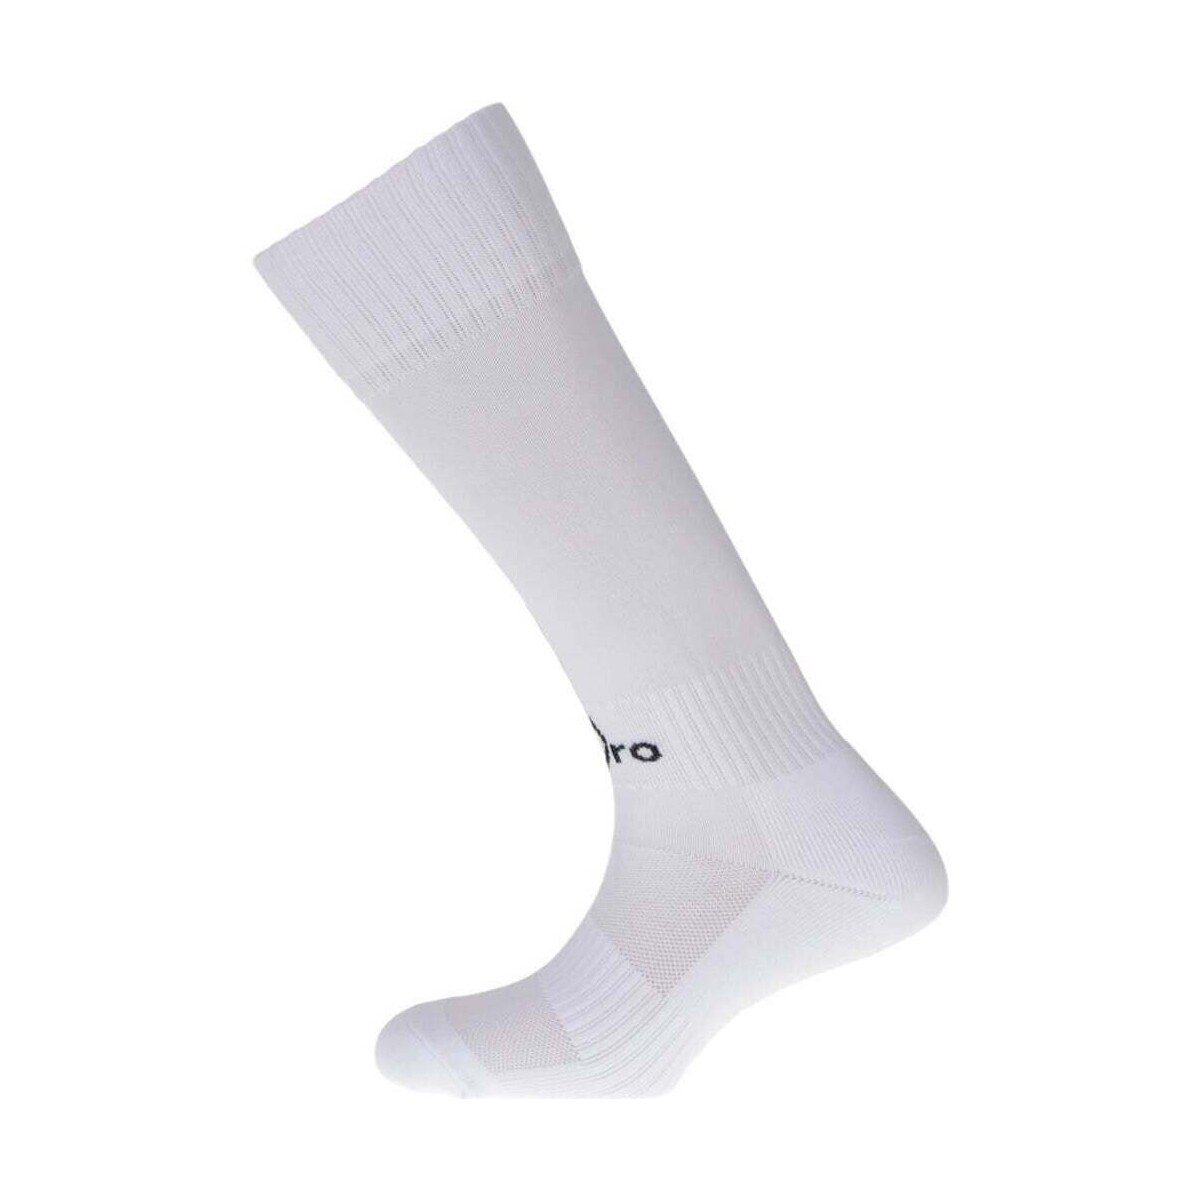 Accesorios Complemento para deporte Spyro MF-FOOT Blanco